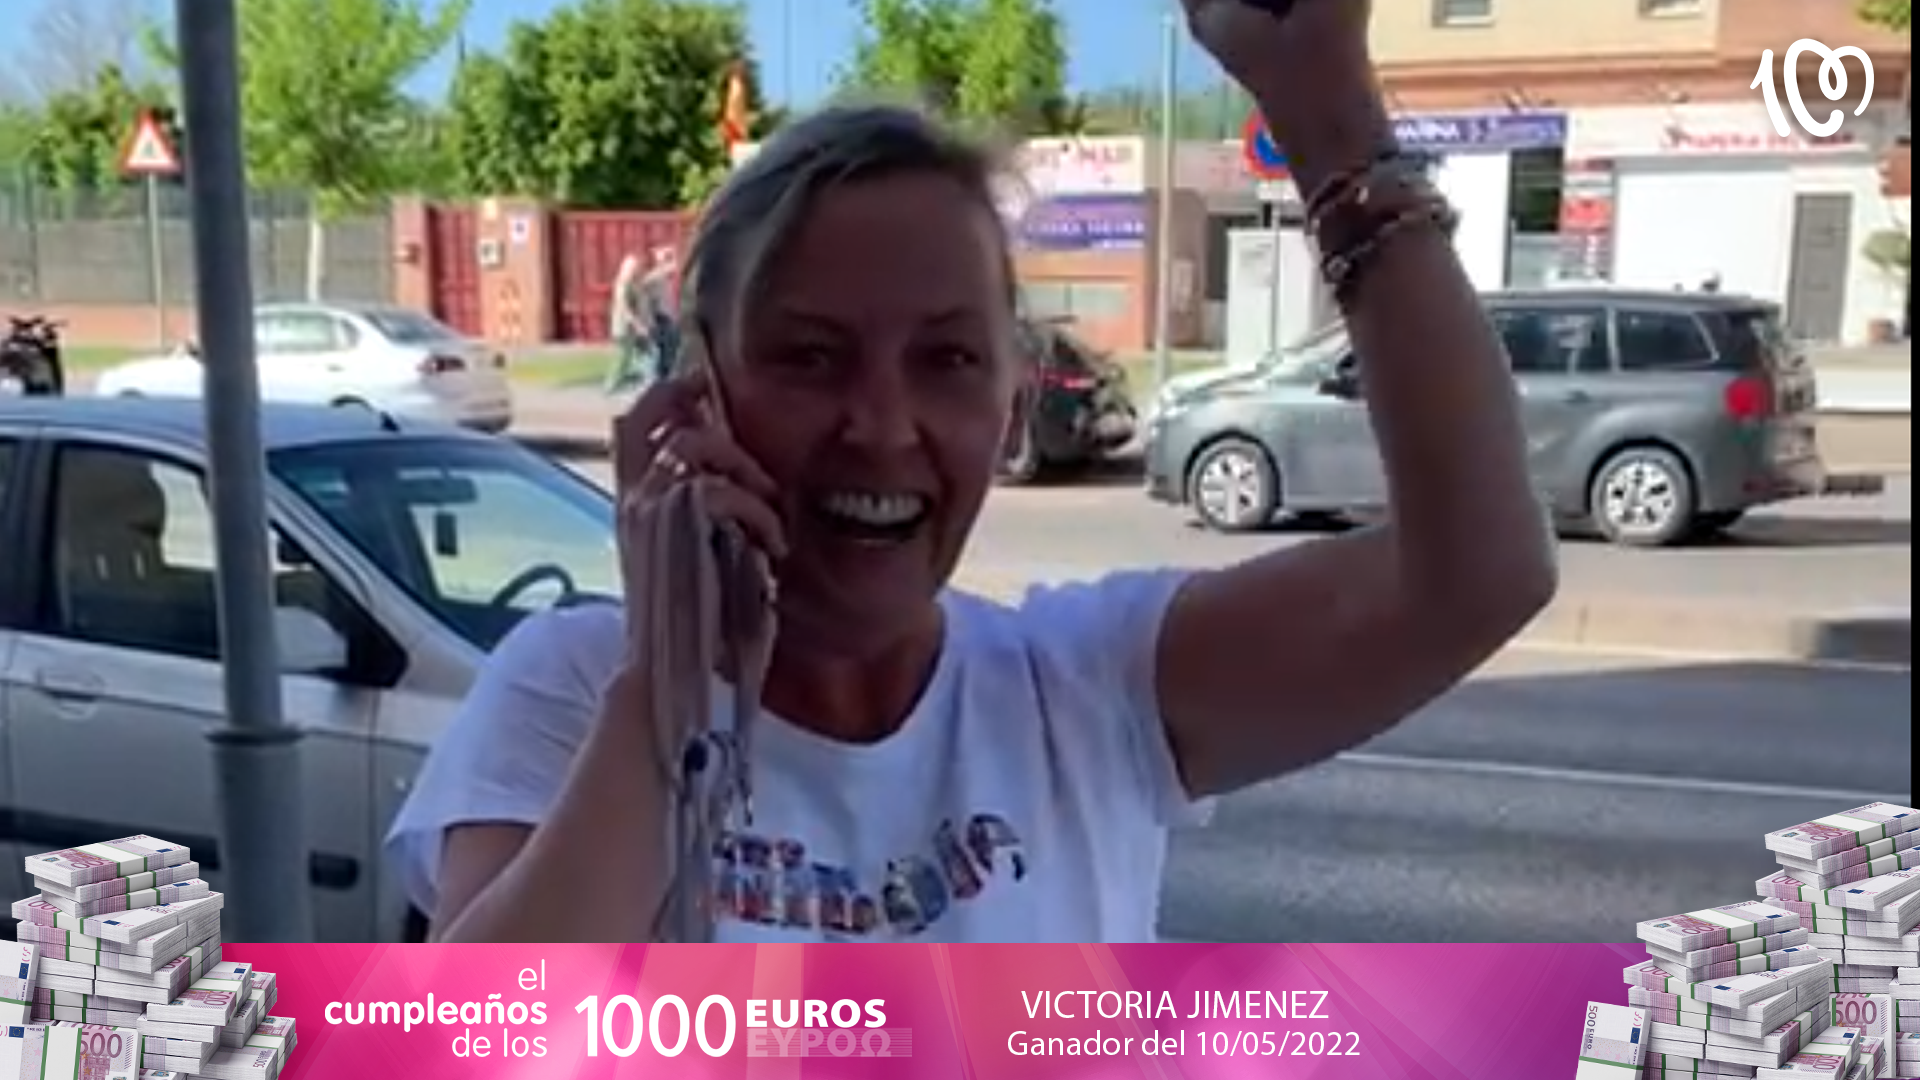 Victoria se lleva El Cumpleaños de los 1.000 euros: "¡Directo a la feria!"